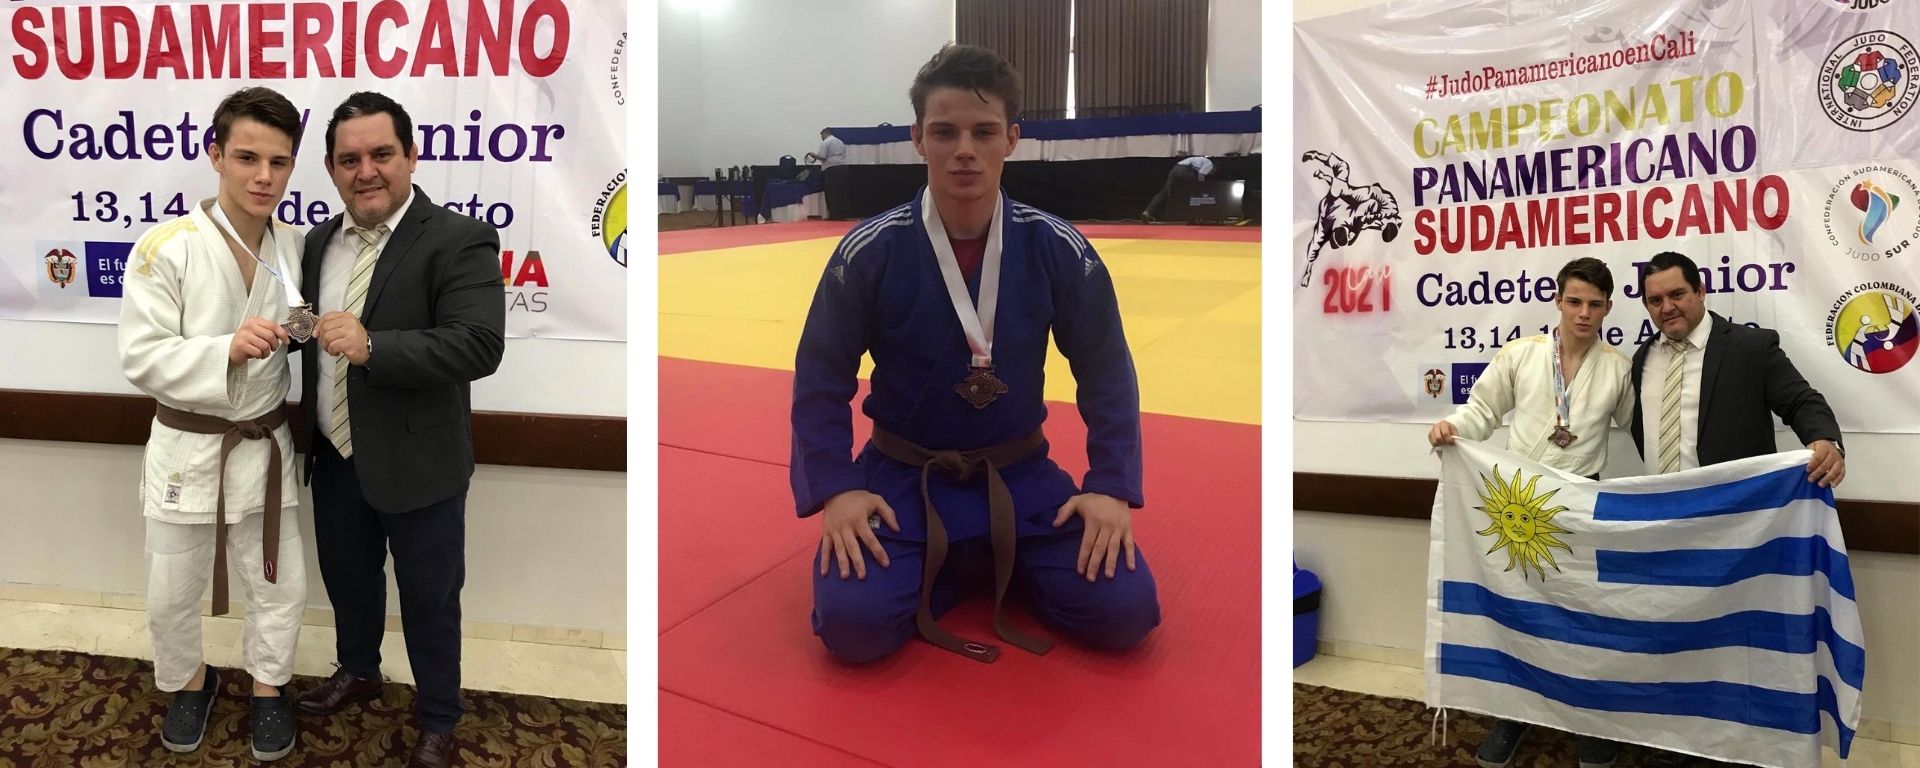 Alumno de FIUM obtuvo medalla de bronce en competencia sudamericana de judo  